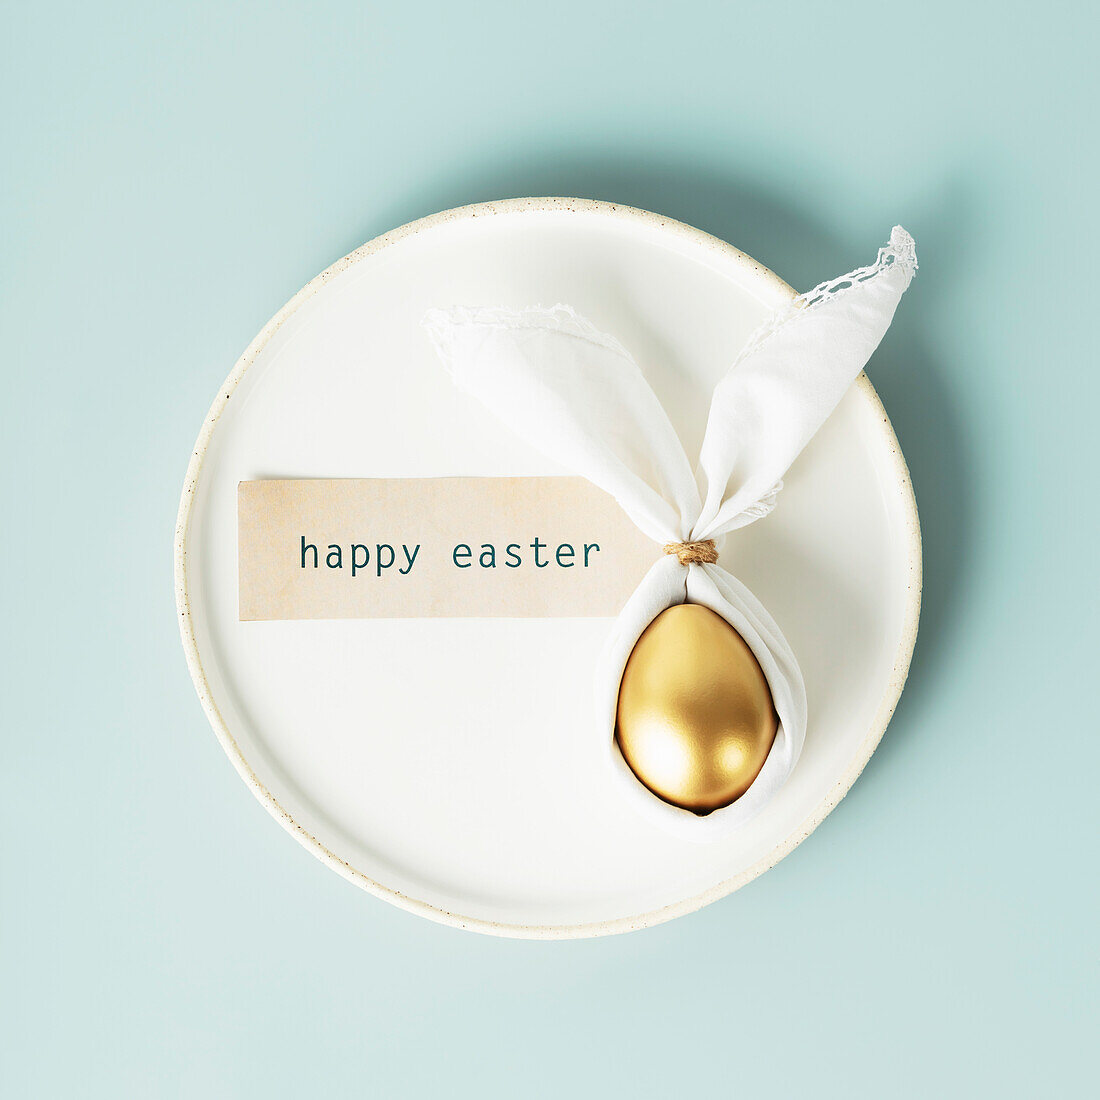 Stilvolle Osterflachlegung mit goldenem Ei in Osterhasen-Serviette auf weißem Teller vor blauem Hintergrund. Minimalistische moderne Ostern Tischdekorationen. Ansicht von oben flach legen